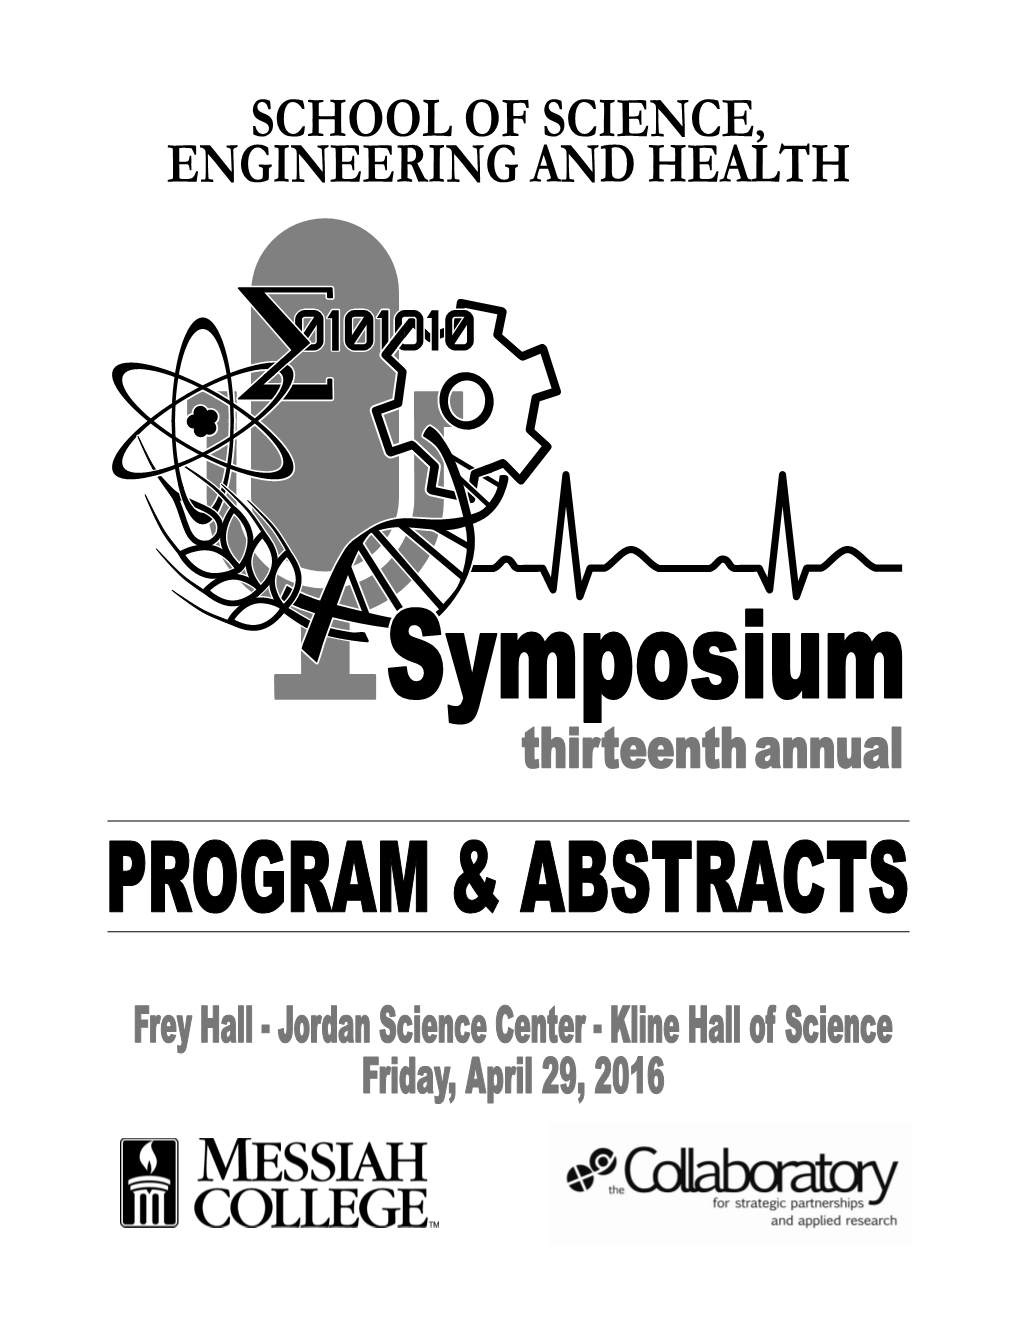 Symposium___Program and A